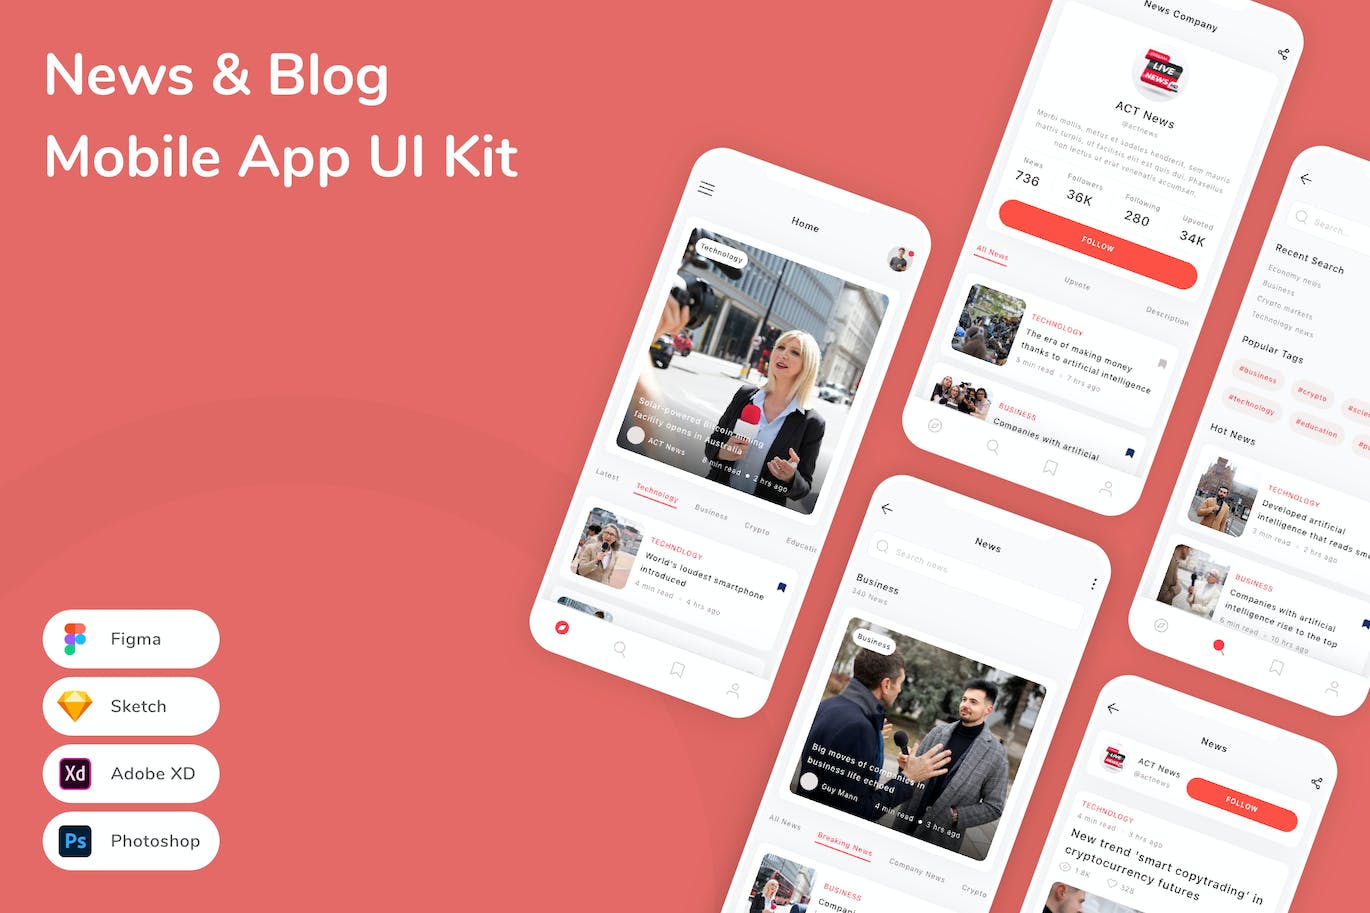 新闻&博客App手机应用程序UI设计素材 News & Blog Mobile App UI Kit APP UI 第1张